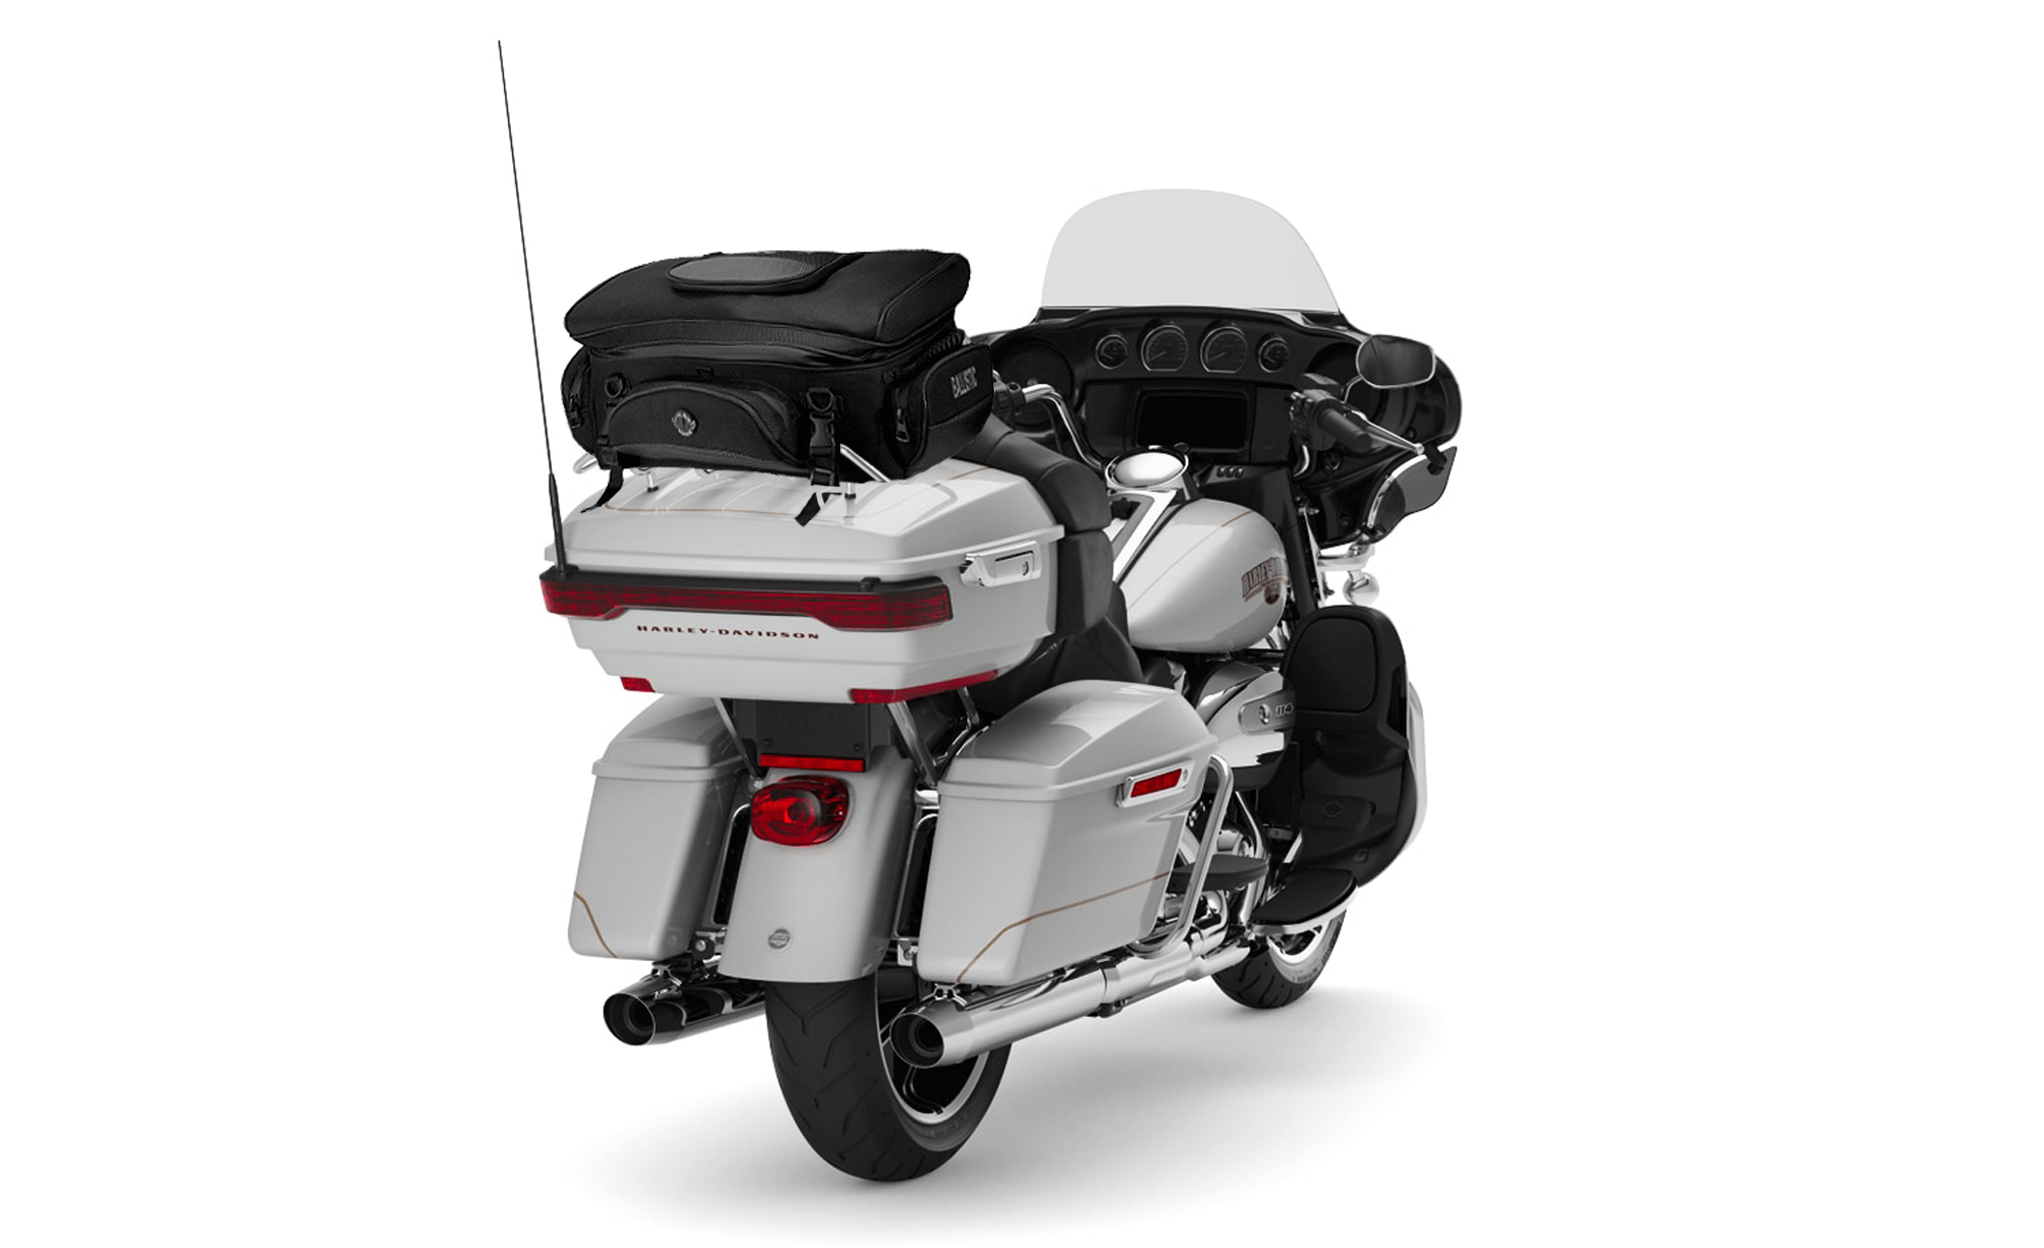 Viking Voyage Elite XL Honda Motorcycle Sissy Bar Bag Bag on Bike View @expand